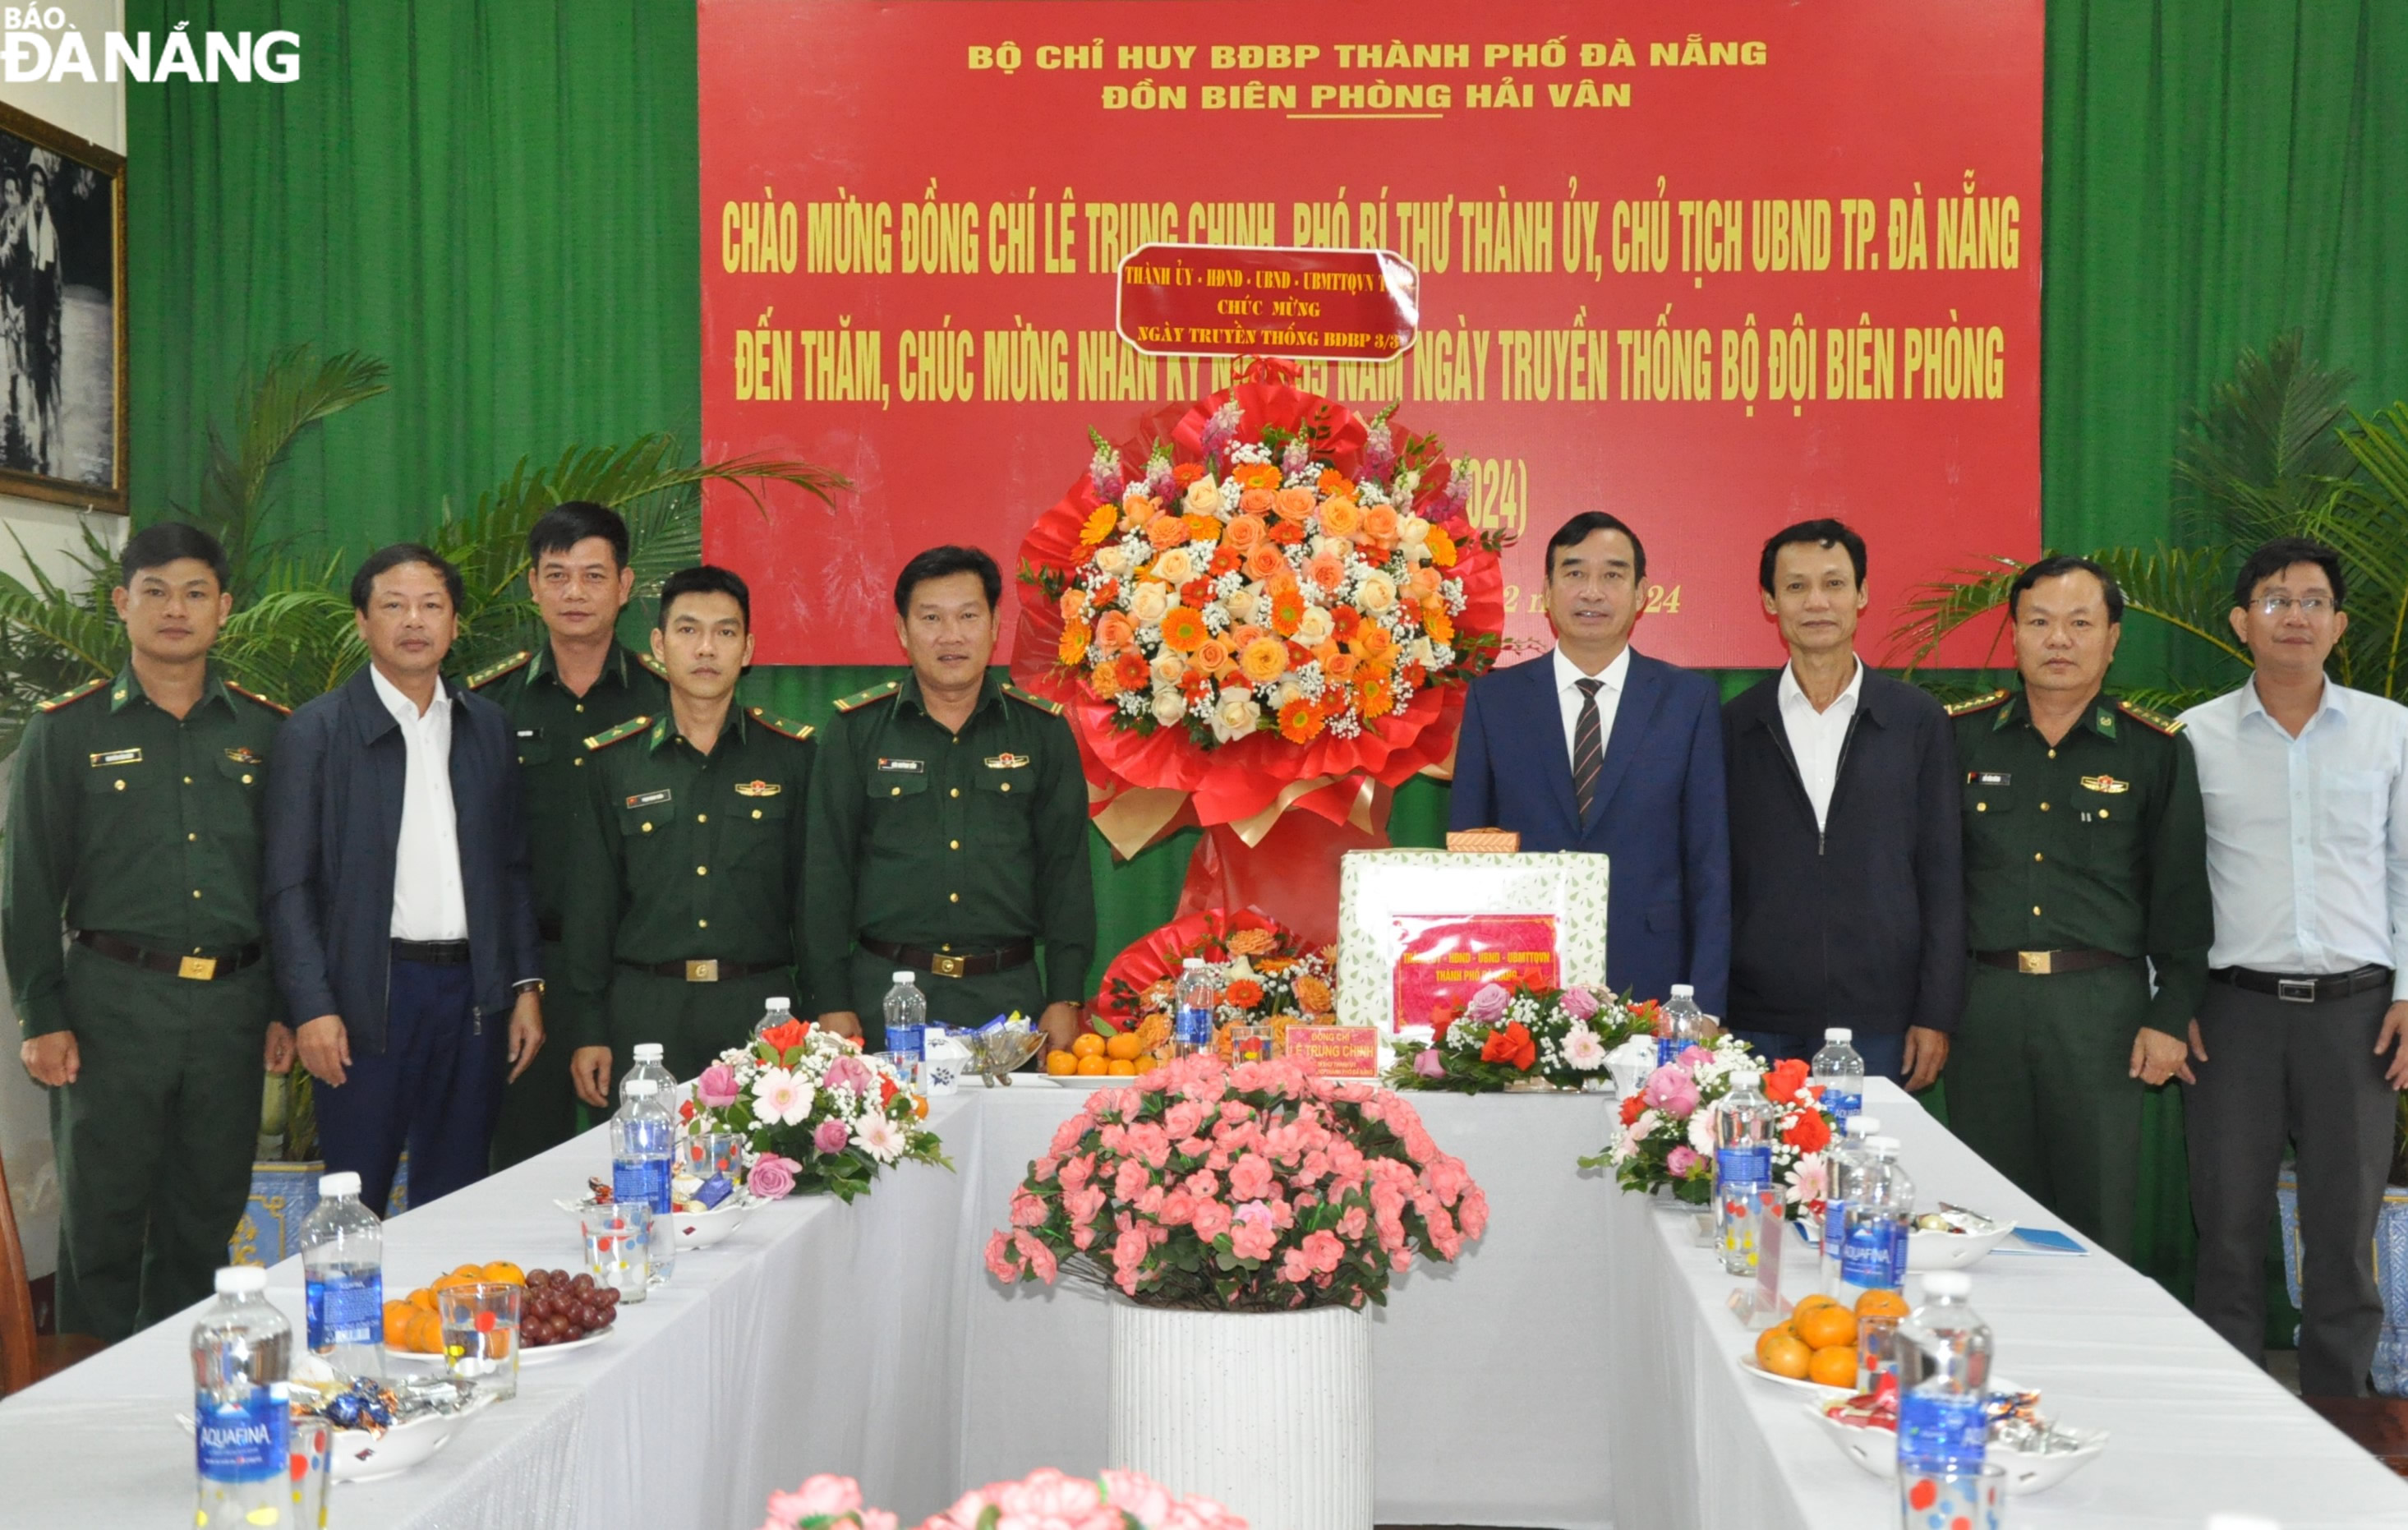 Chủ tịch UBND thành phố Lê Trung Chinh thăm, tặng hoa chúc mừng Đồn Biên phòng Hải Vân. Ảnh: LÊ HÙNG